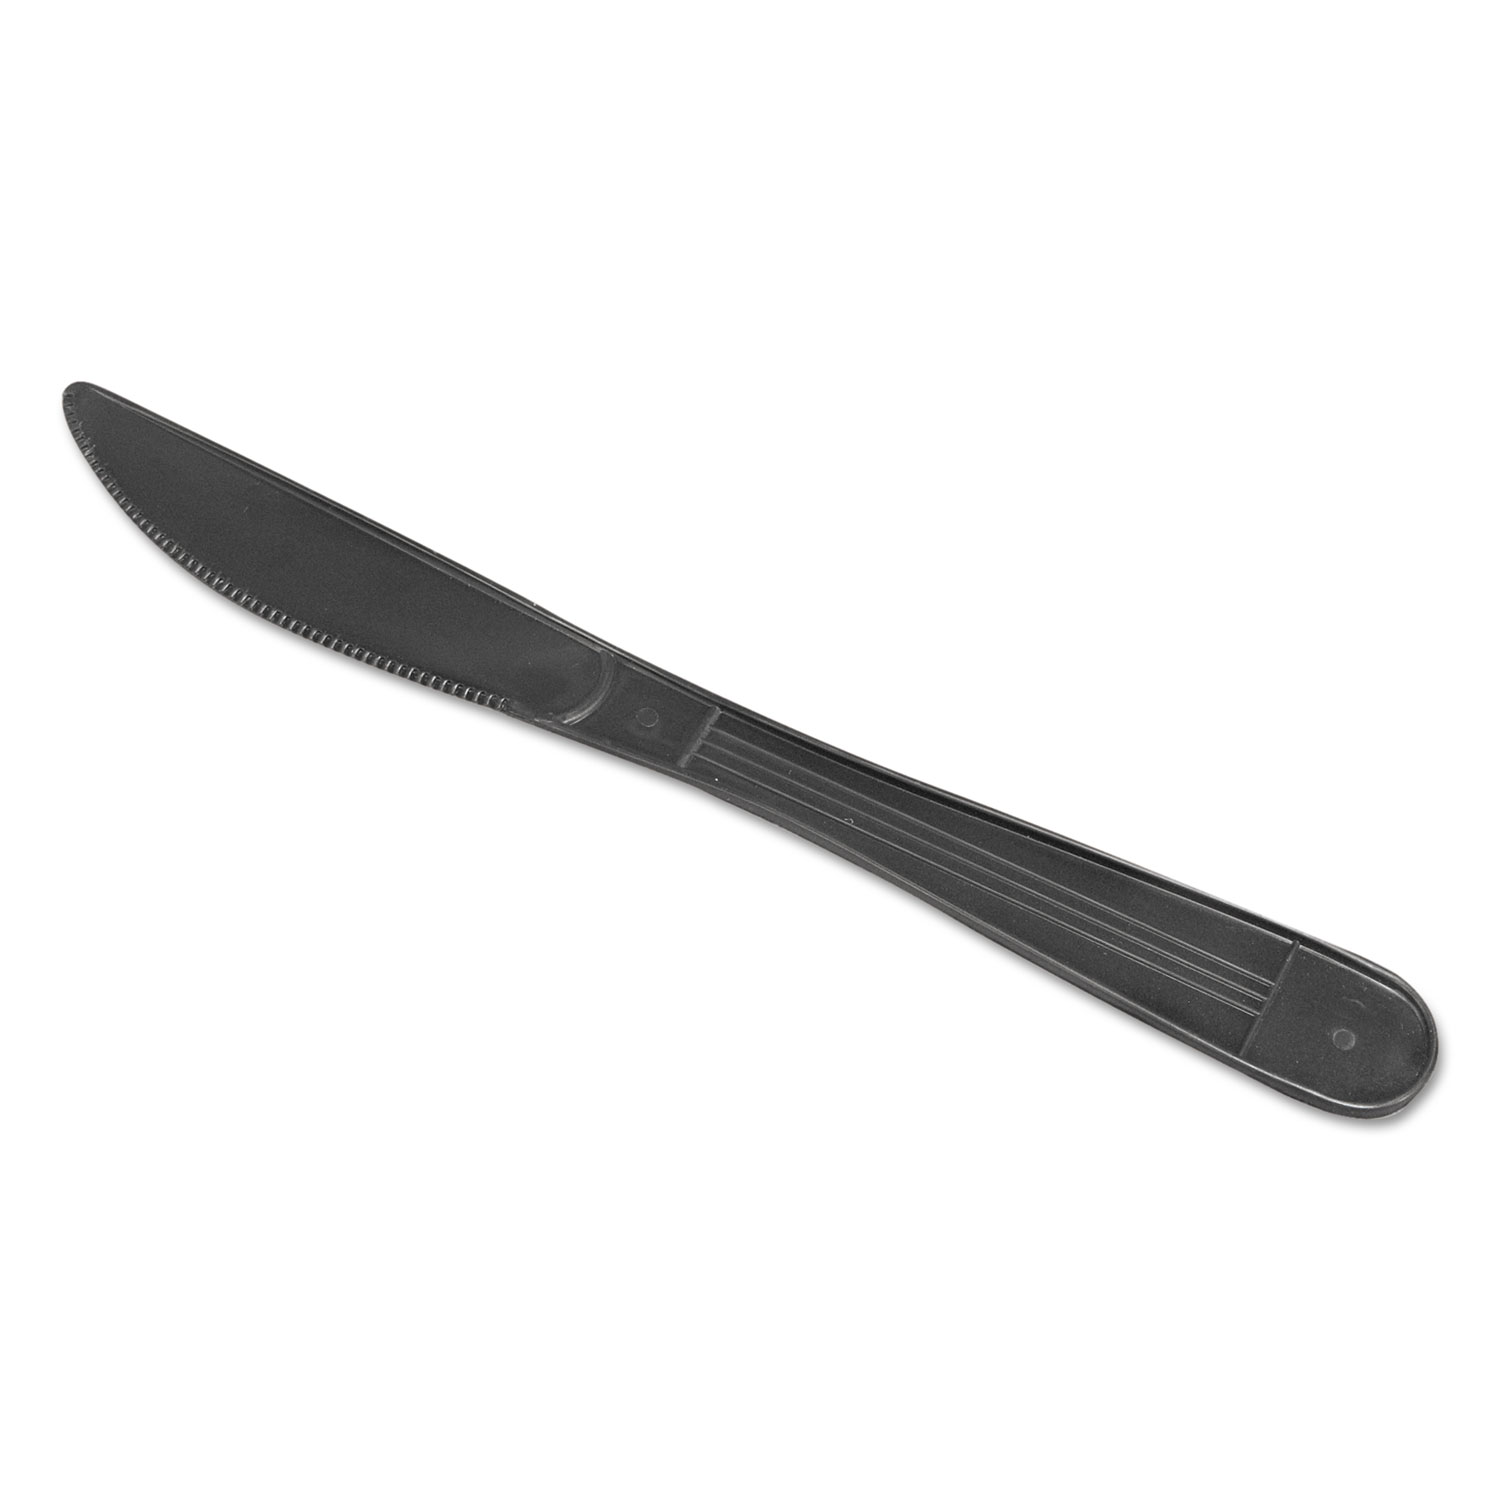  GEN GENHYBIWKN WraPolypropyleneed Cutlery, 7 1/2 Knife, Heavyweight, Black, 1000/Carton (GENHYBIWKN) 